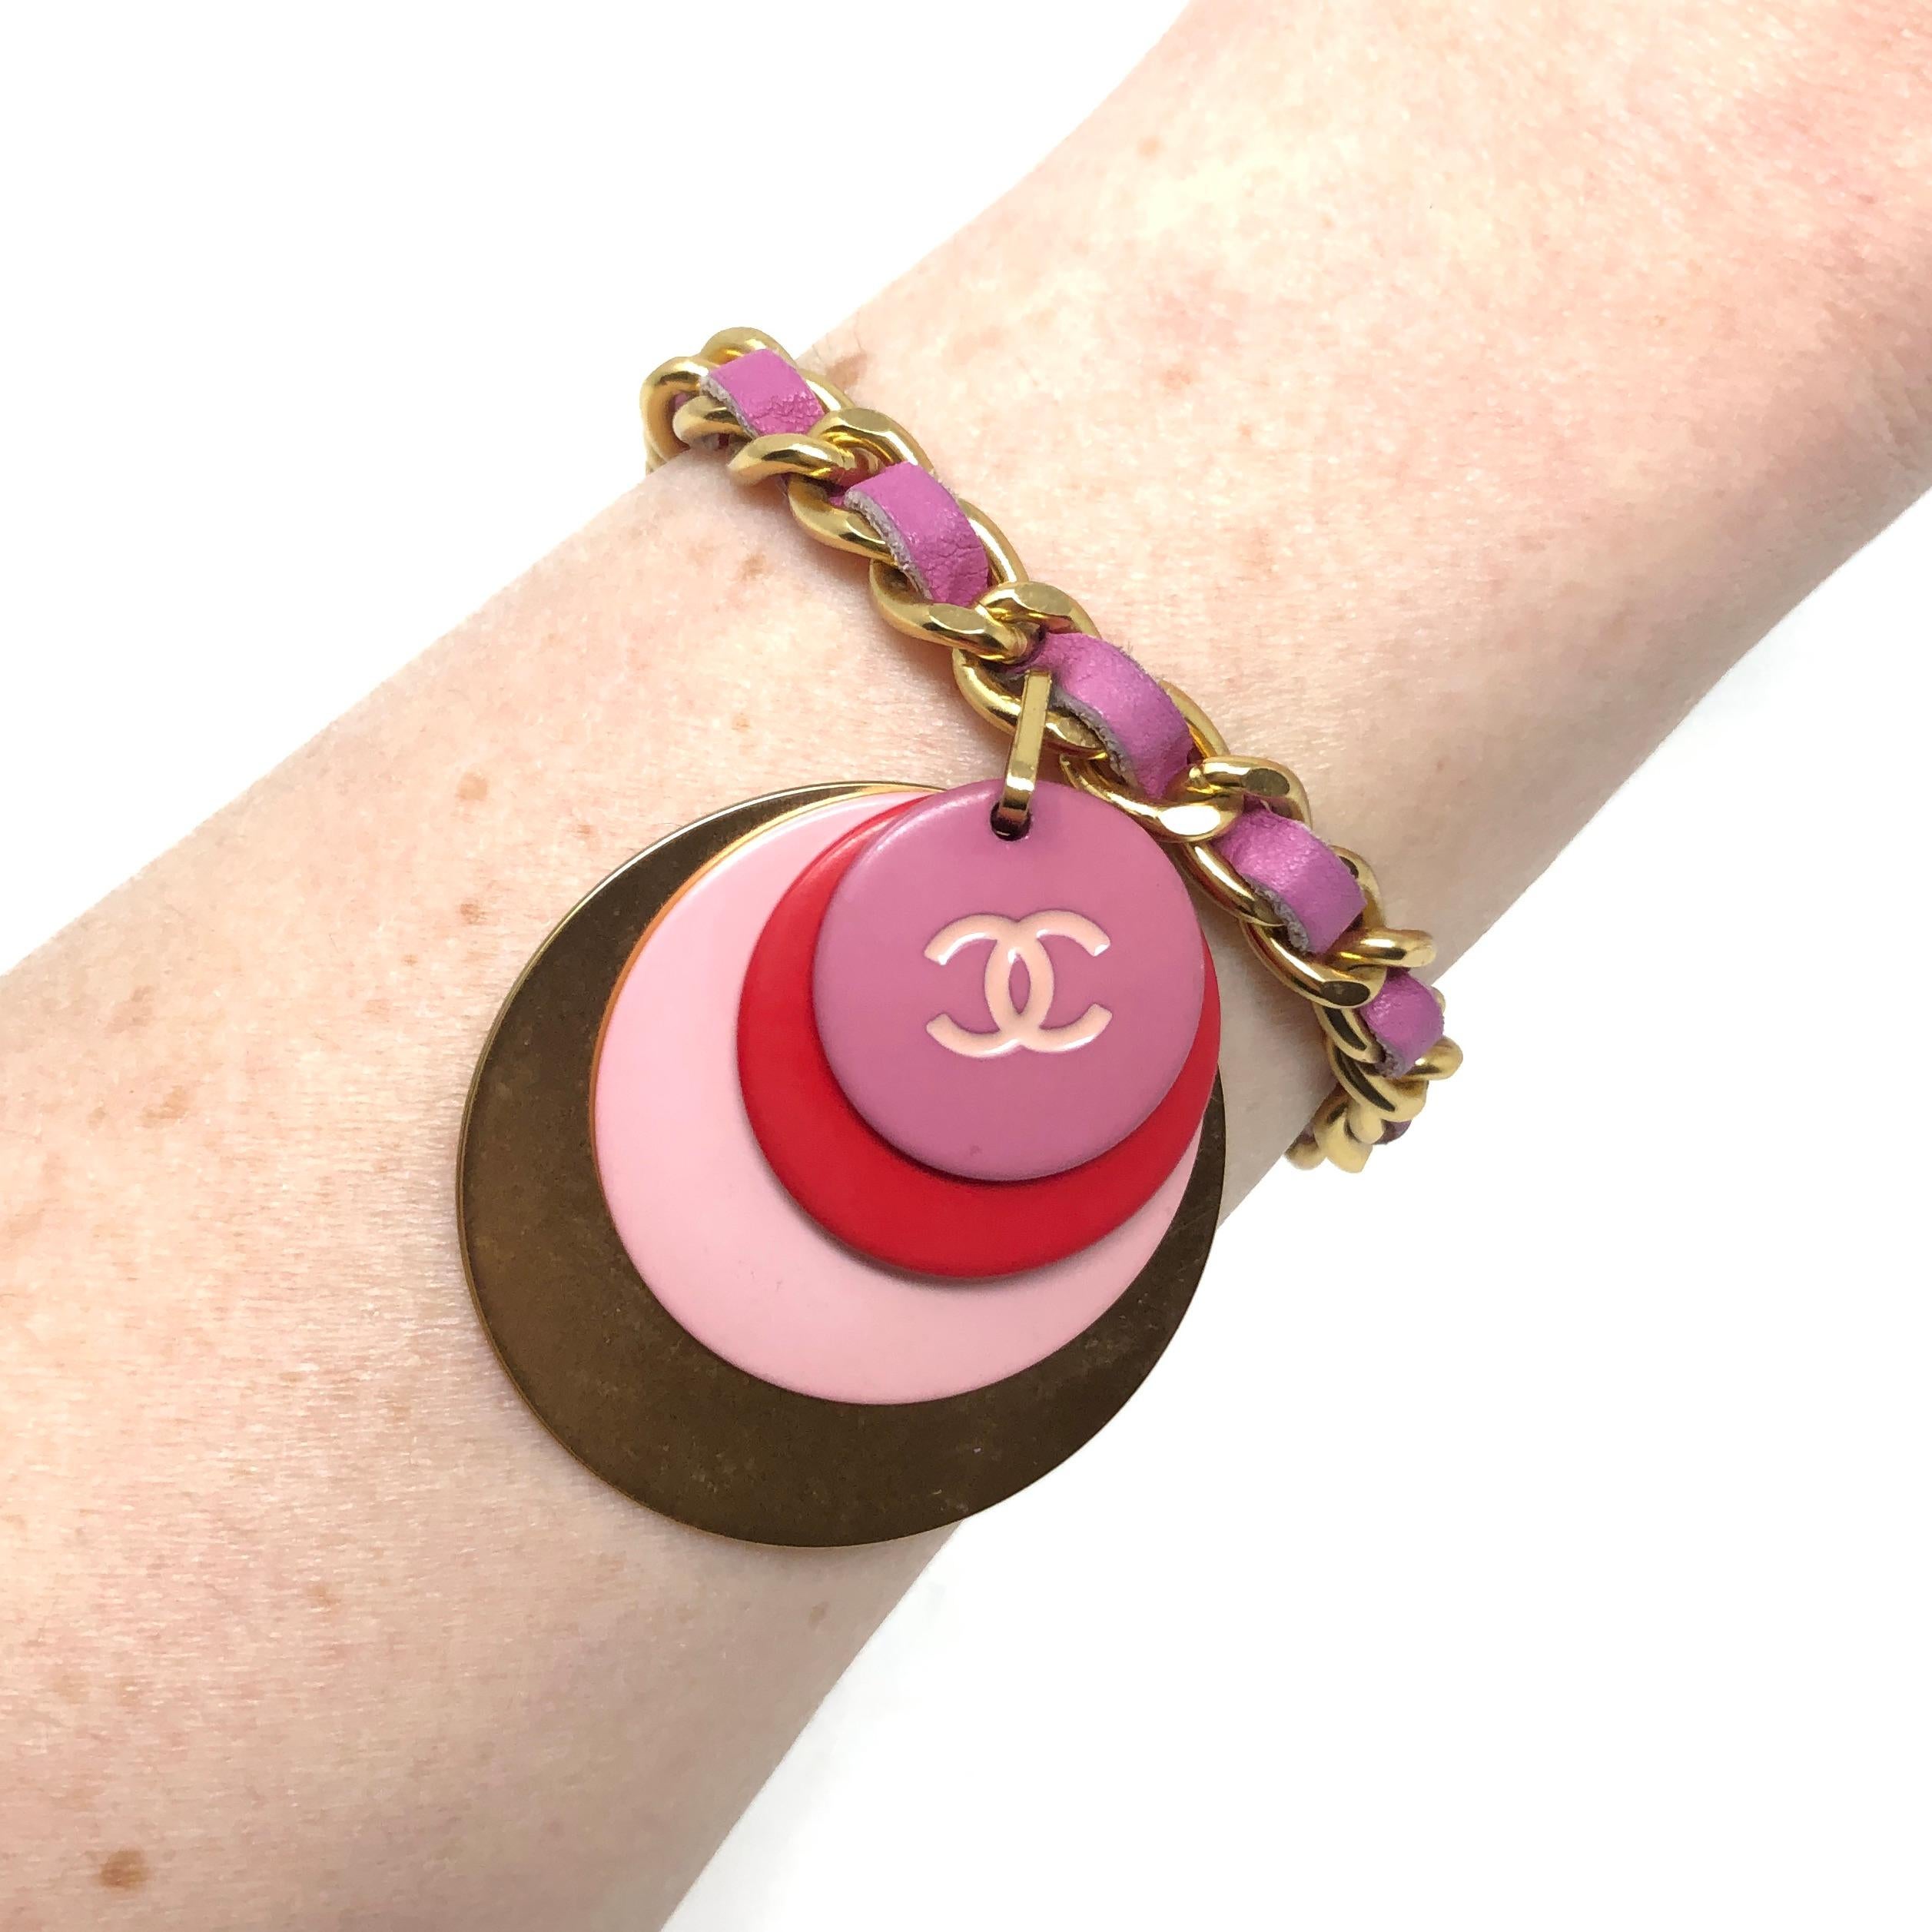 Ce bracelet chic a été créé par Chanel en 2001.

Rapport de condition :
Excellent

Les détails...
Ce bracelet est composé d'une chaîne à maillons en plaqué or et d'un bracelet en cuir rose. Suspendue à la chaîne, une breloque, composée de 3 disques